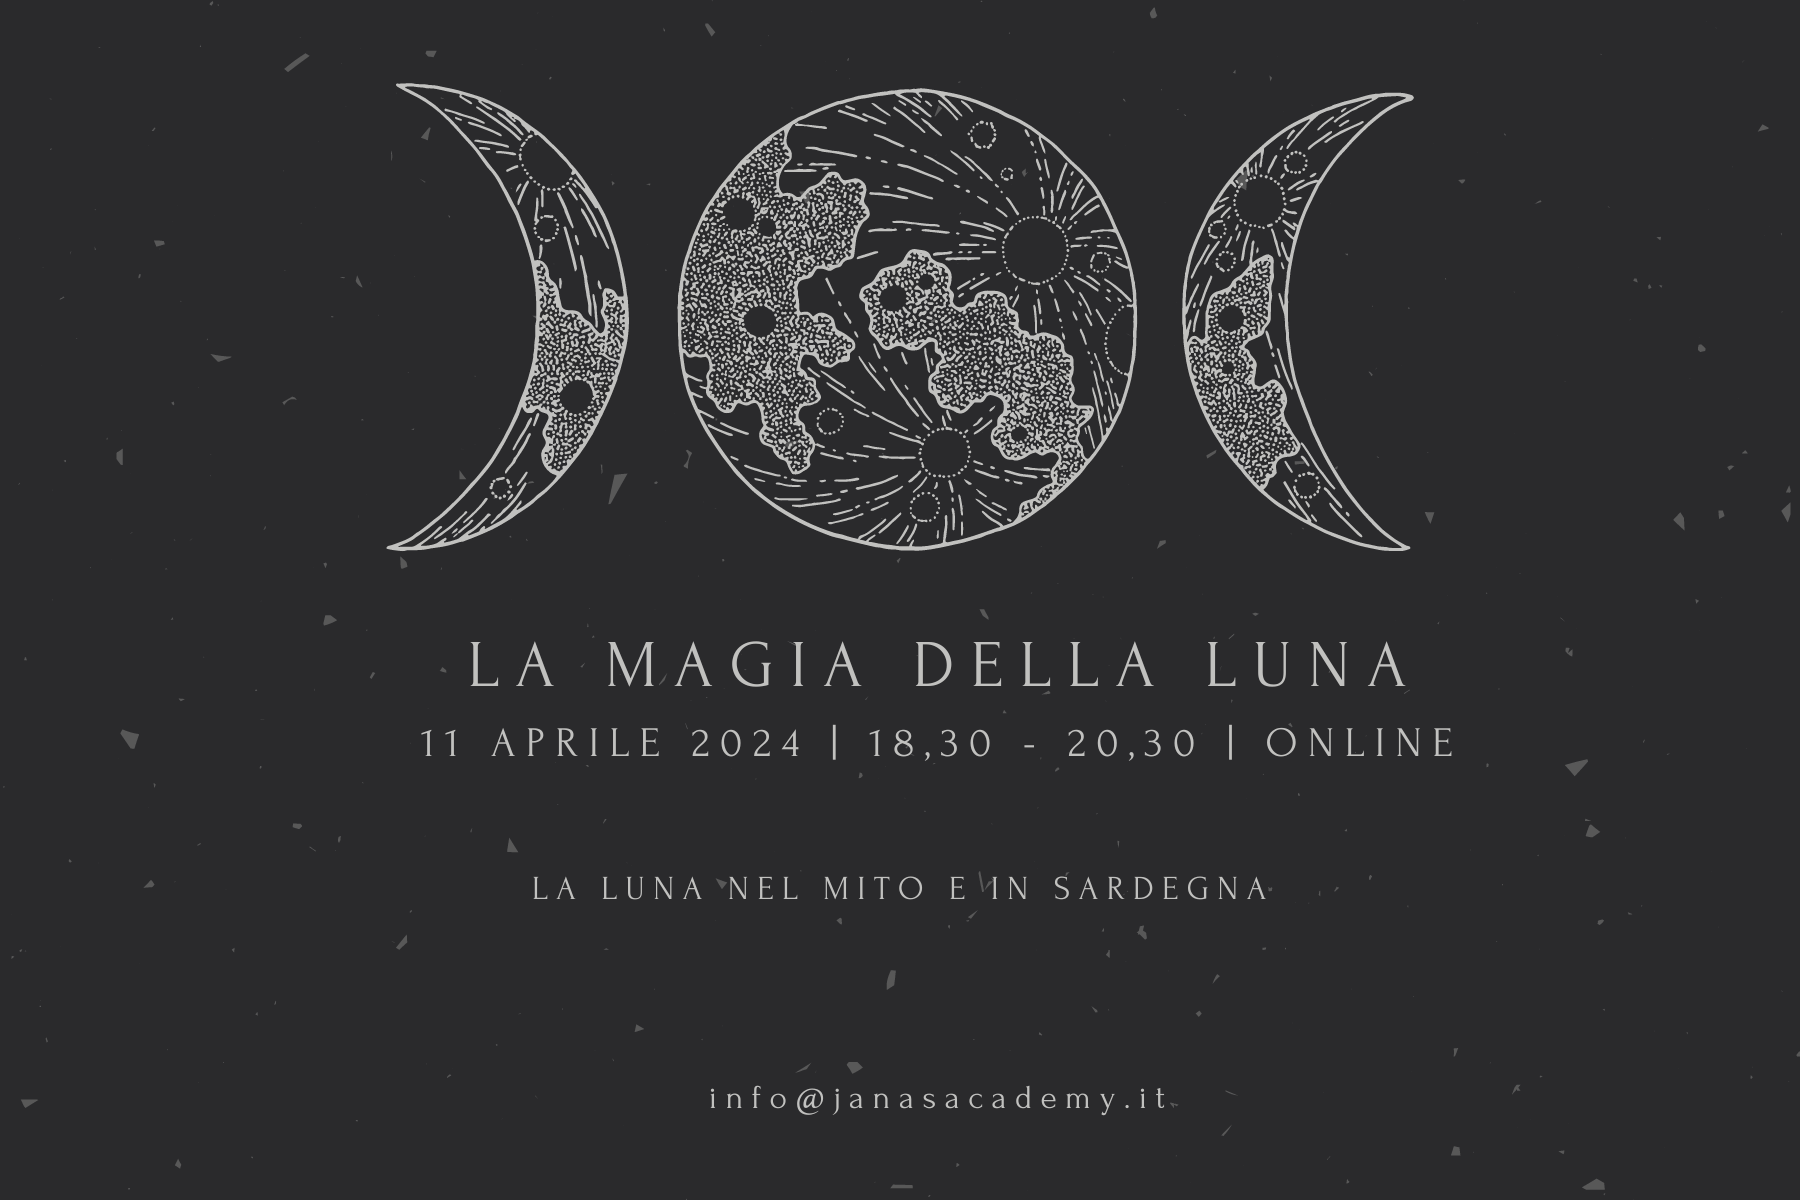 La magia della luna La luna nel mito e in Sardegna Janas Academy